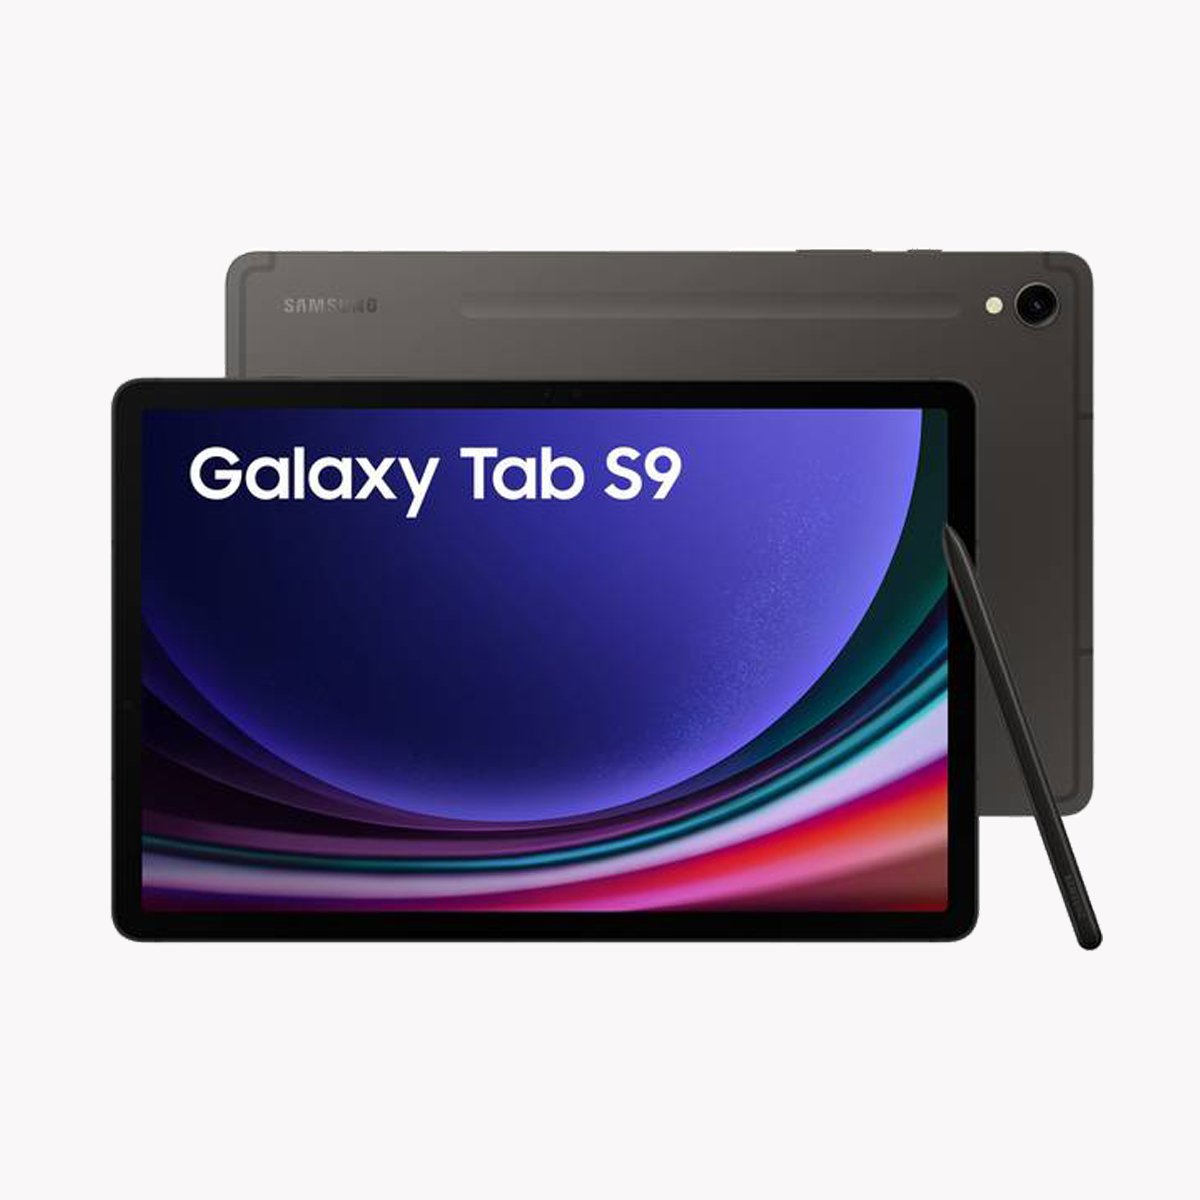 Samsung Galaxy Tab S9 5G - Tech Tiger